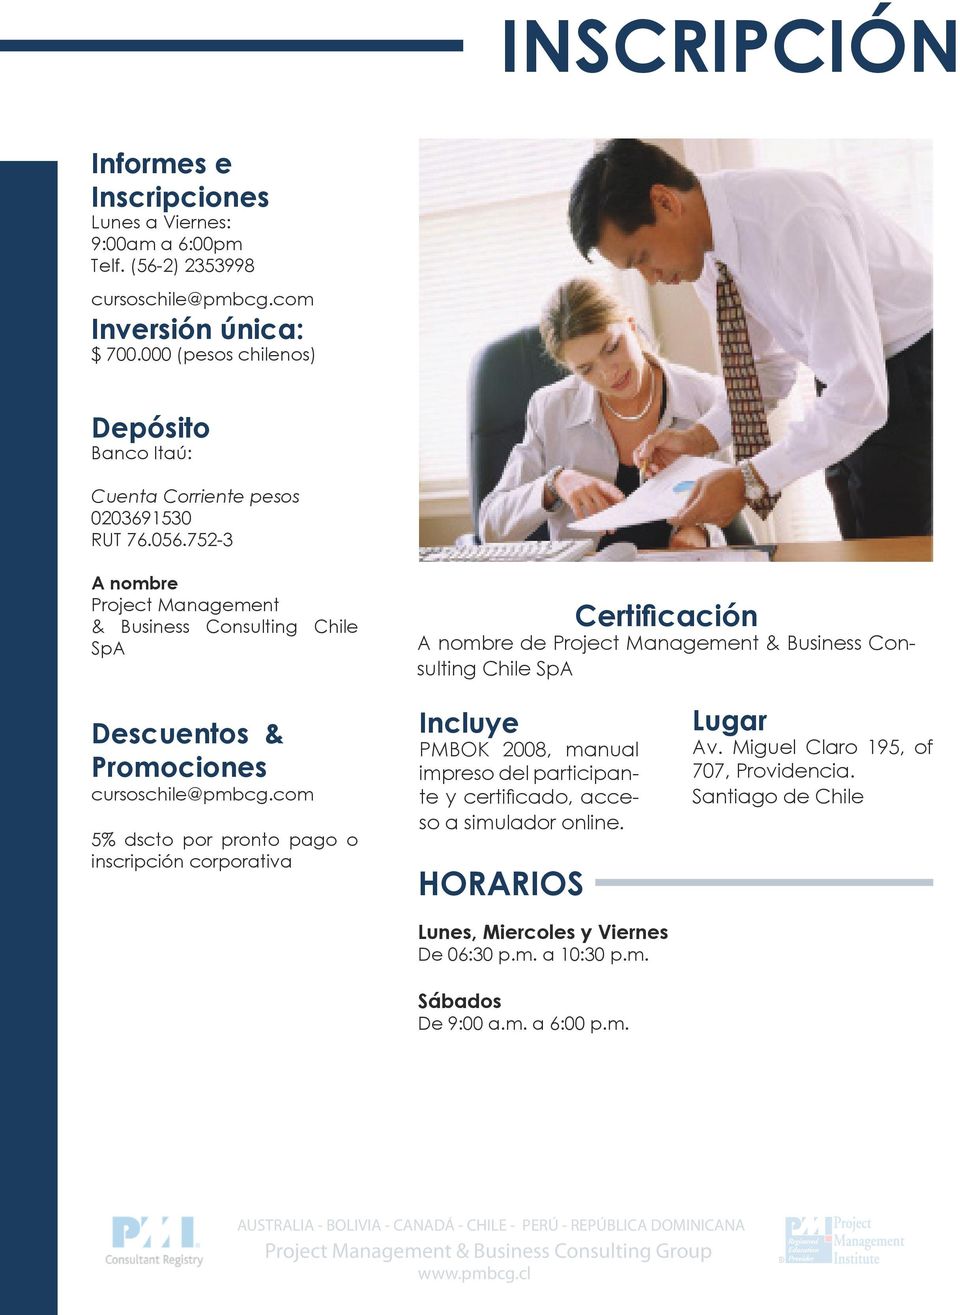 752-3 A nombre Project Management & Business Consulting Chile SpA Certificación A nombre de Project Management & Business Consulting Chile SpA Descuentos & Promociones